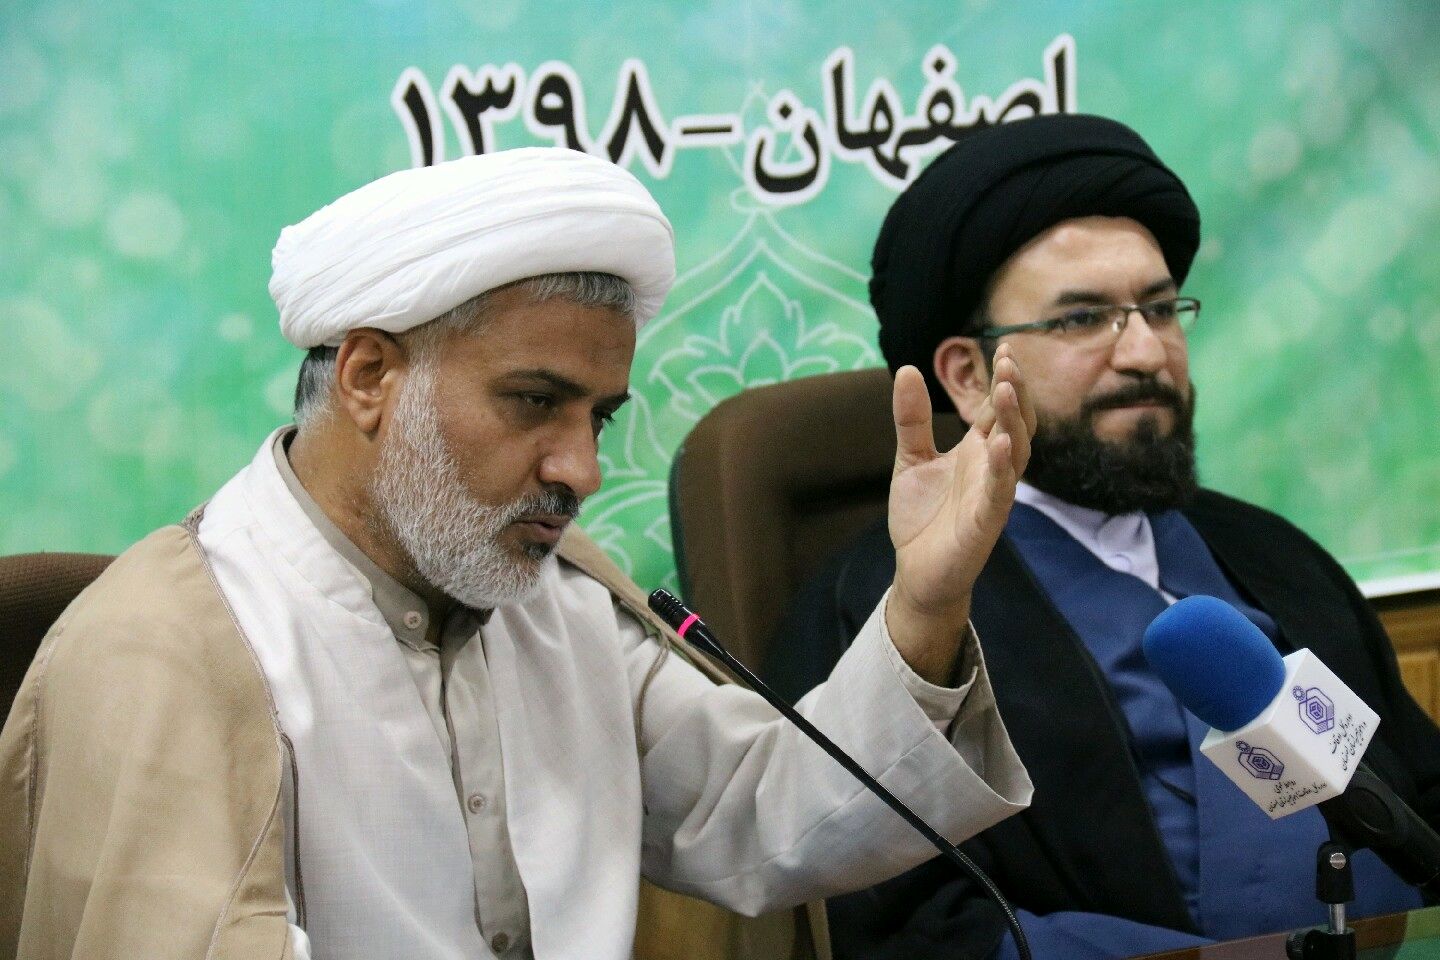 برگزاری مسابقات سراسری قرآن کریم در اصفهان قطعا دستاوردهای خوبی به همراه دارد